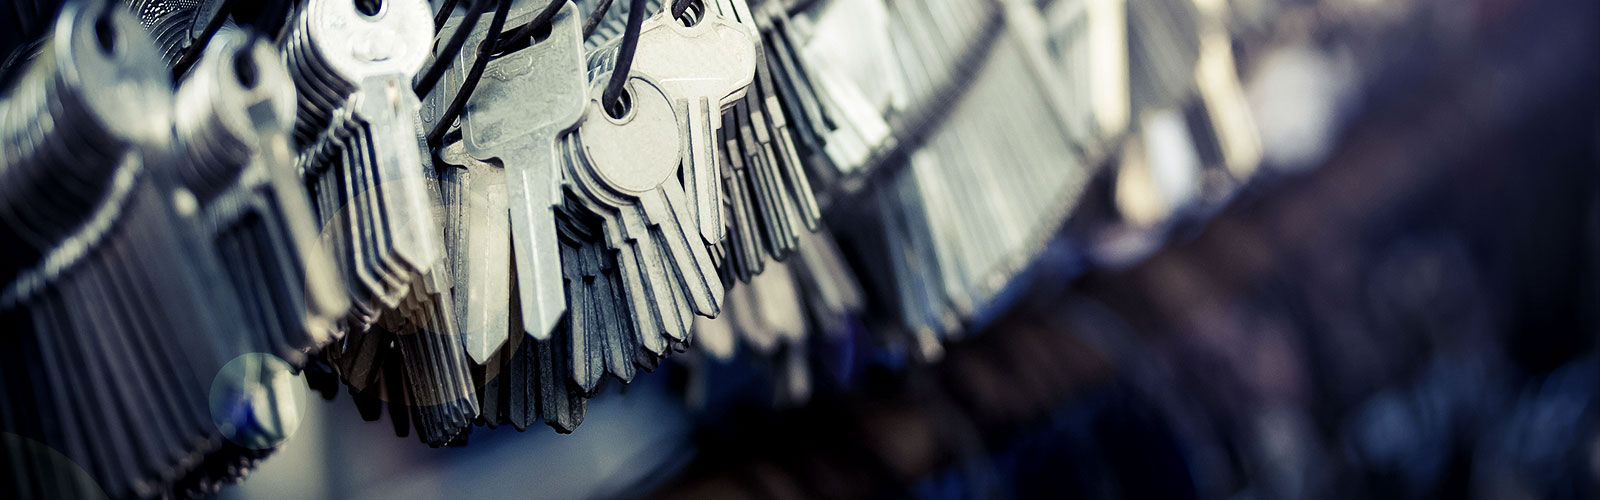 Scottsdale: Locksmith, Safes and Keys